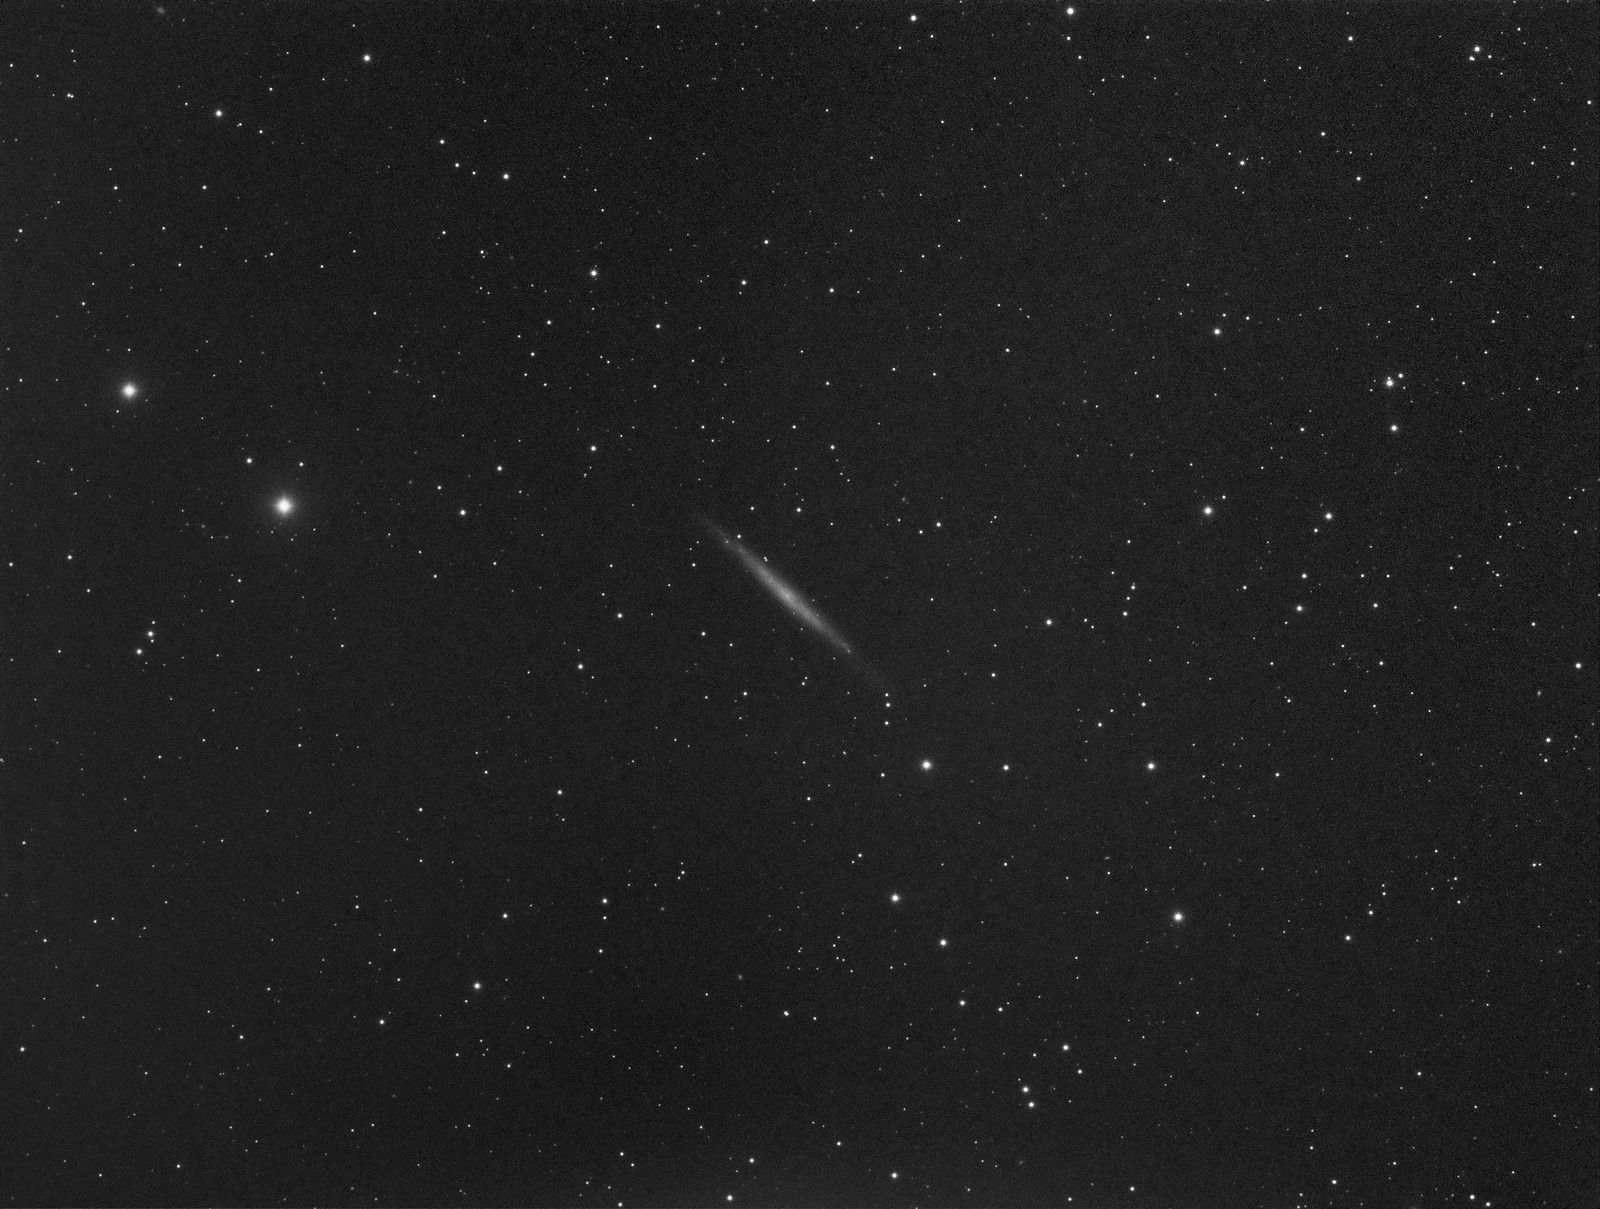 026 - NGC 4244 - Luminance